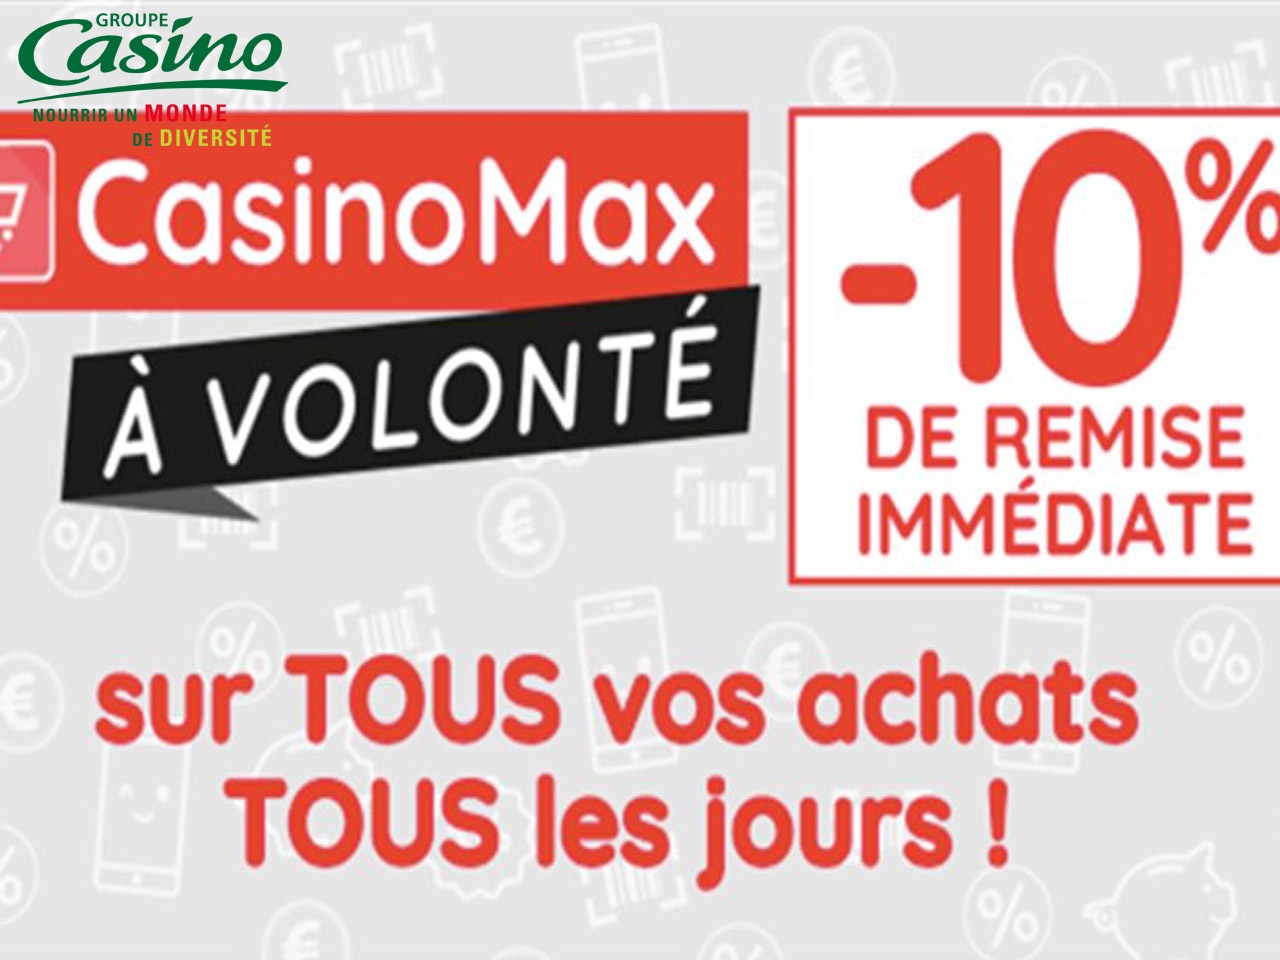 Casino réinvente la fidélité avec Casino Max à  volonté, et est récompensé pour son étiquetage sur le bien-être animal en France